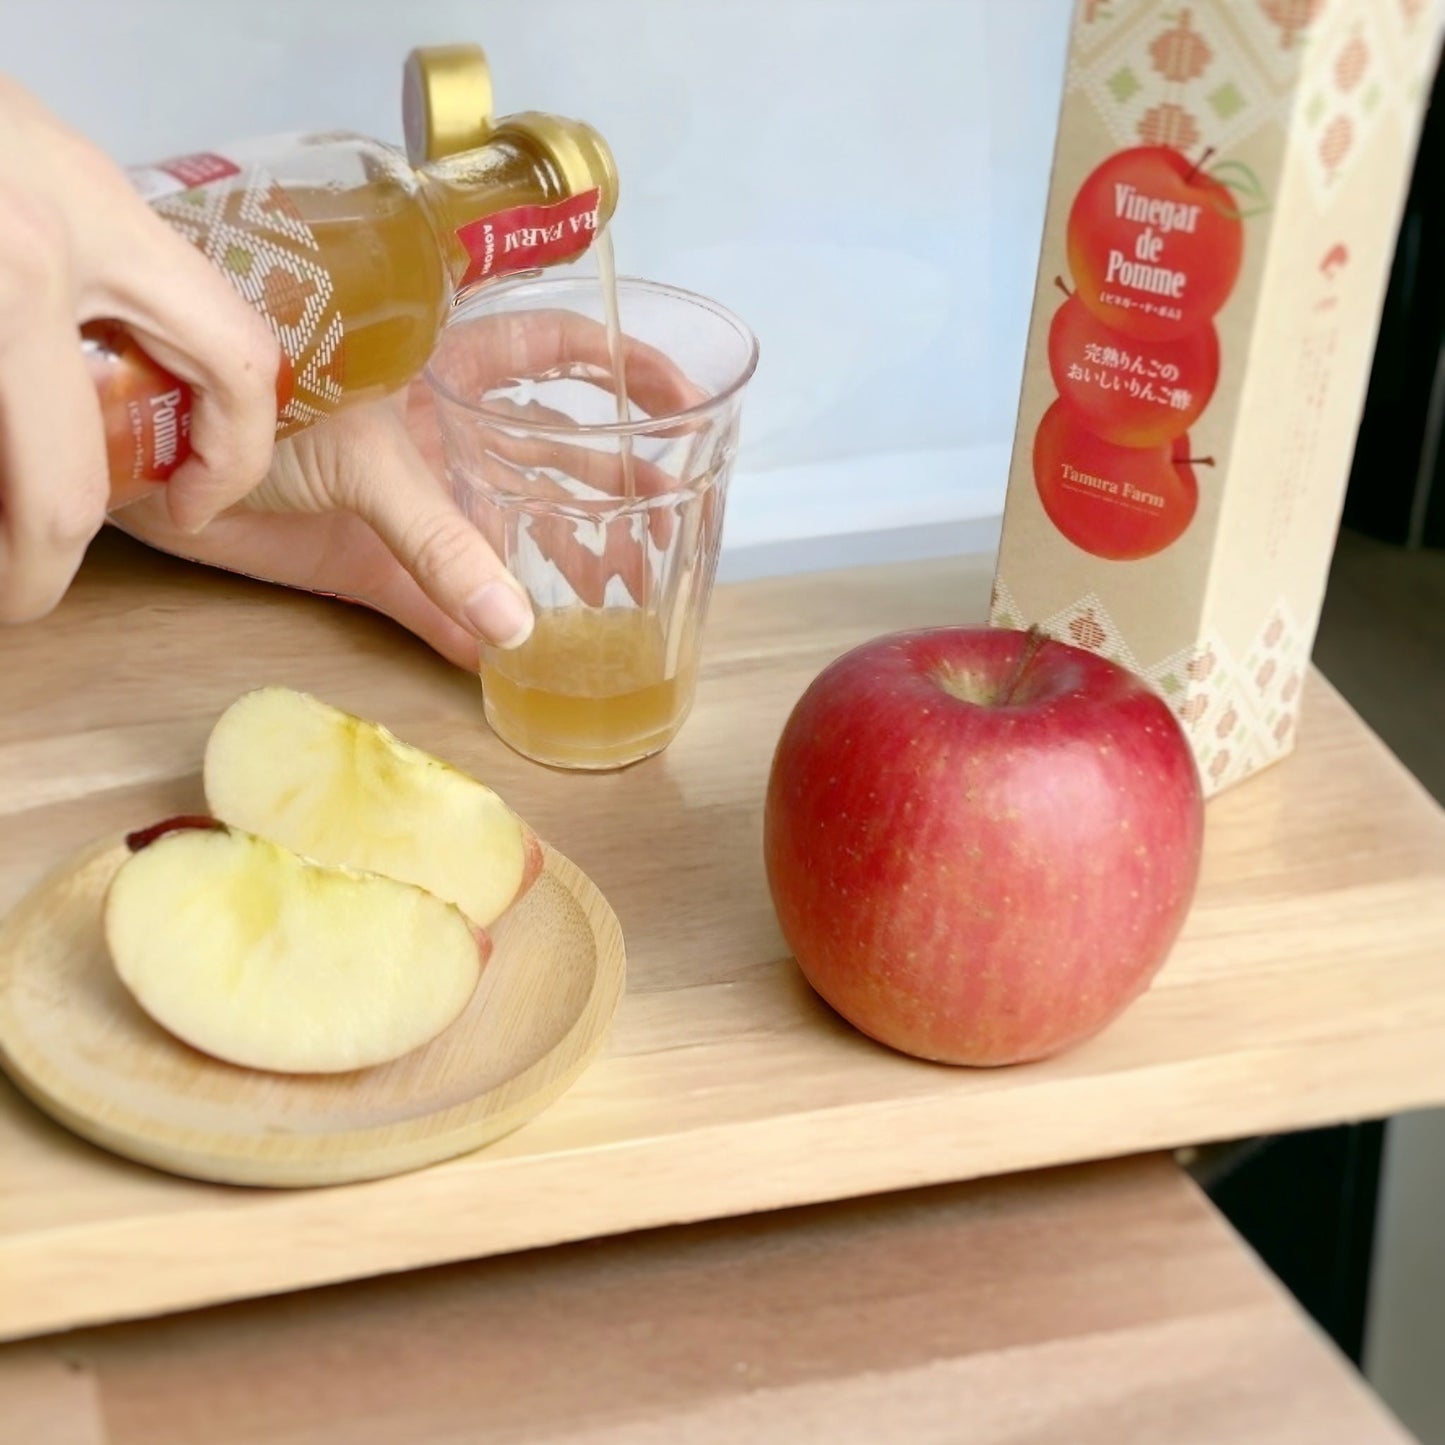 りんご酢 Vinegar de Pomme